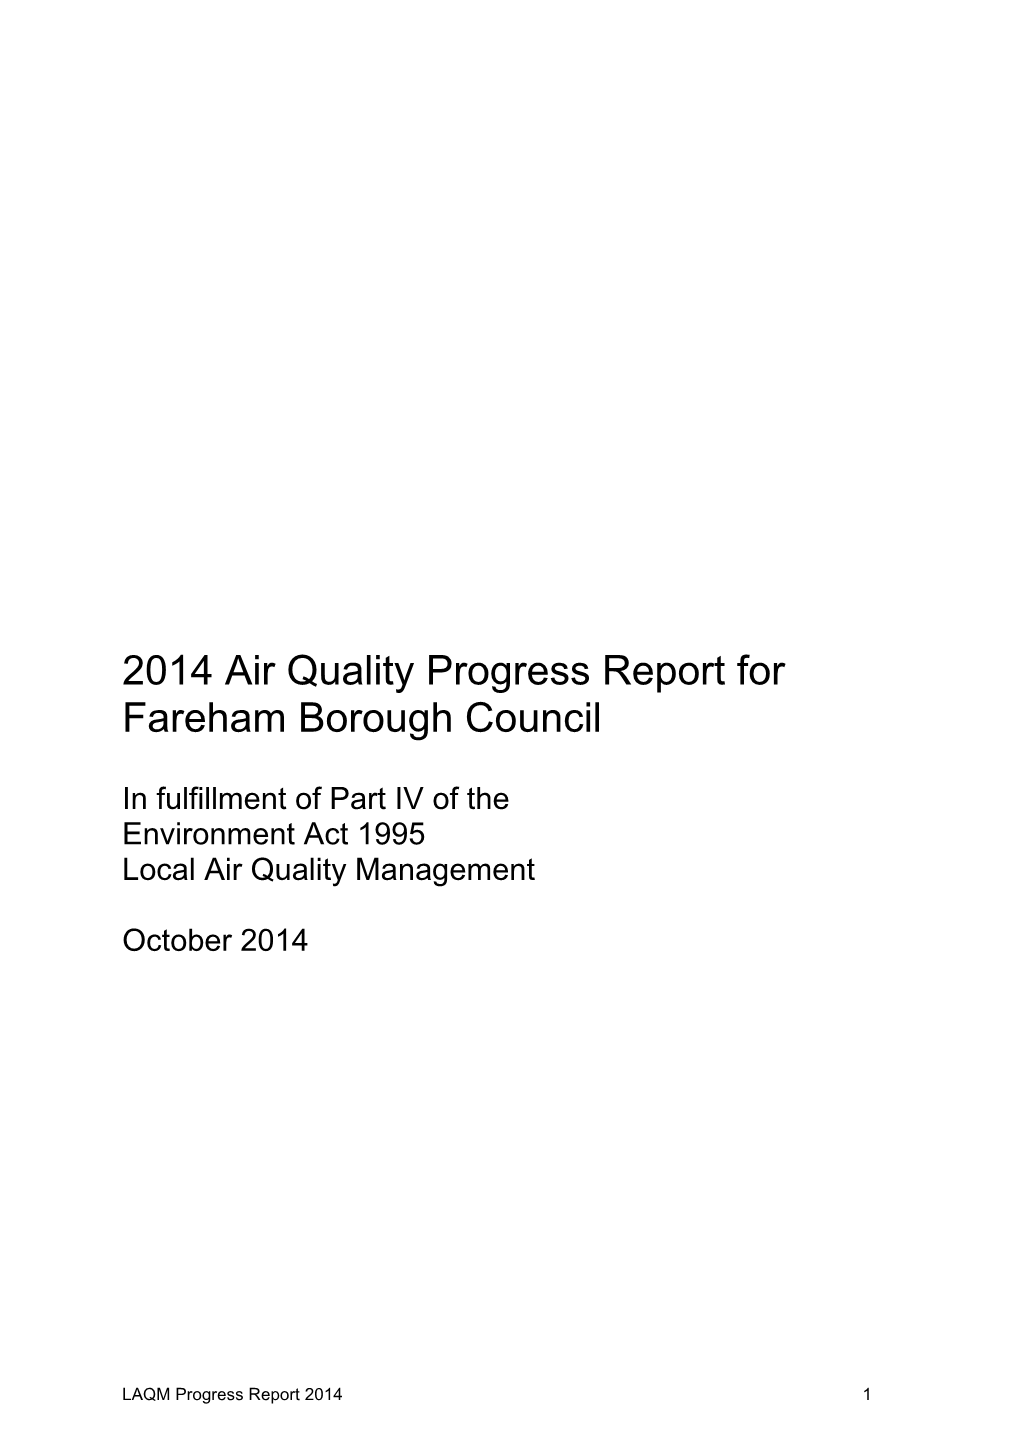 2014 Air Quality Progress Report for Fareham Borough Council